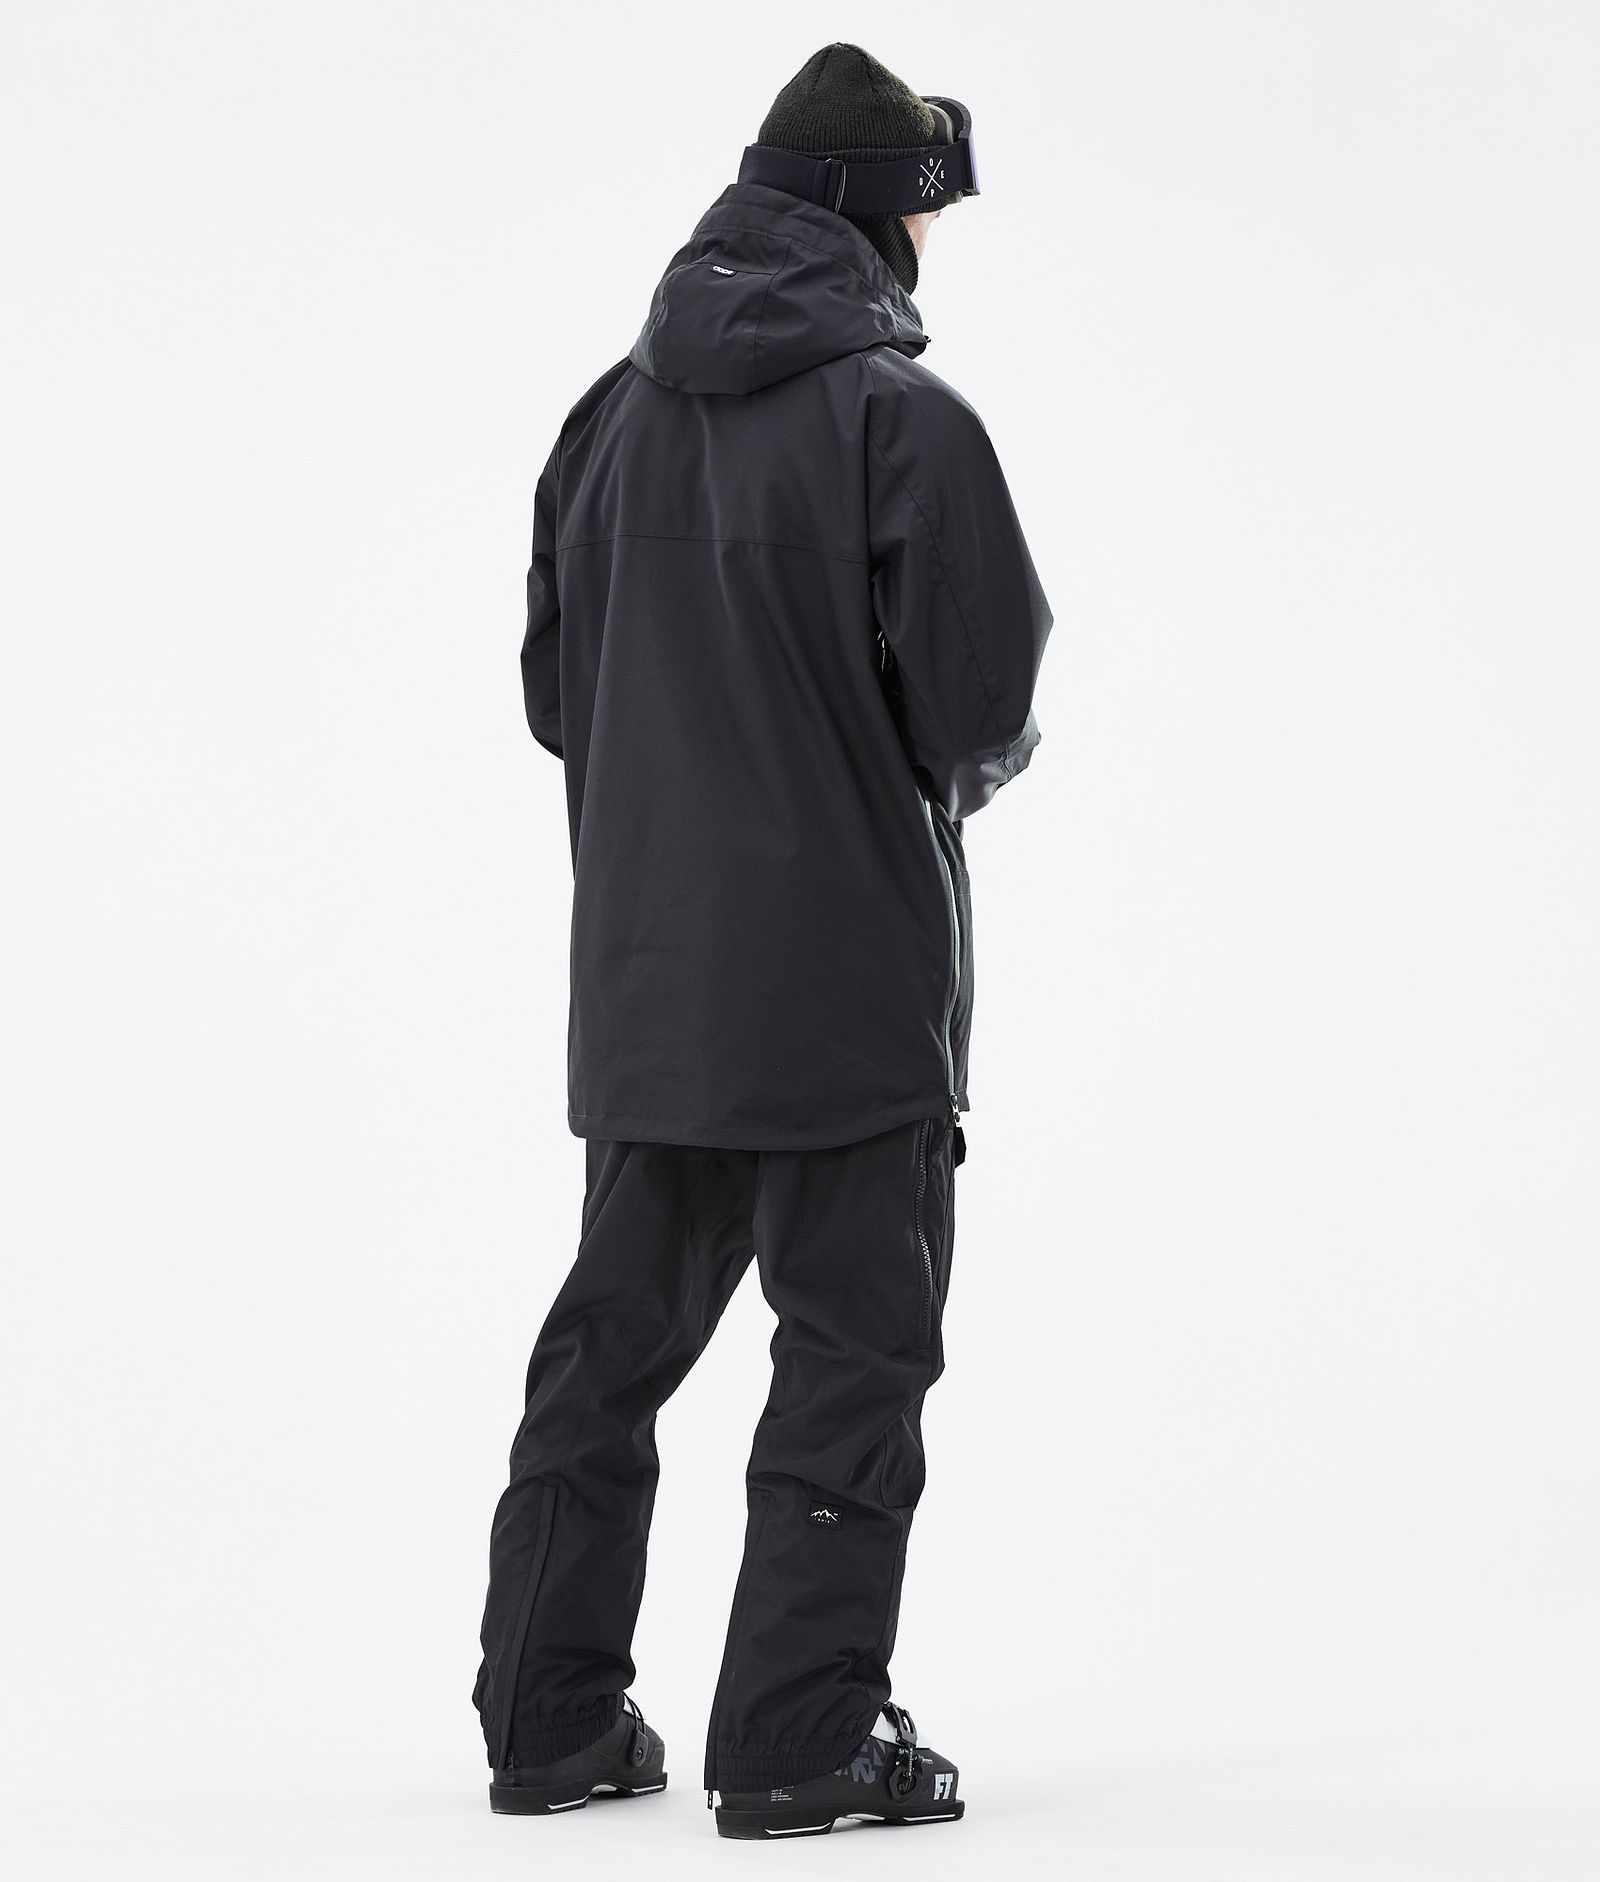 Akin Outfit de Esquí Hombre Black